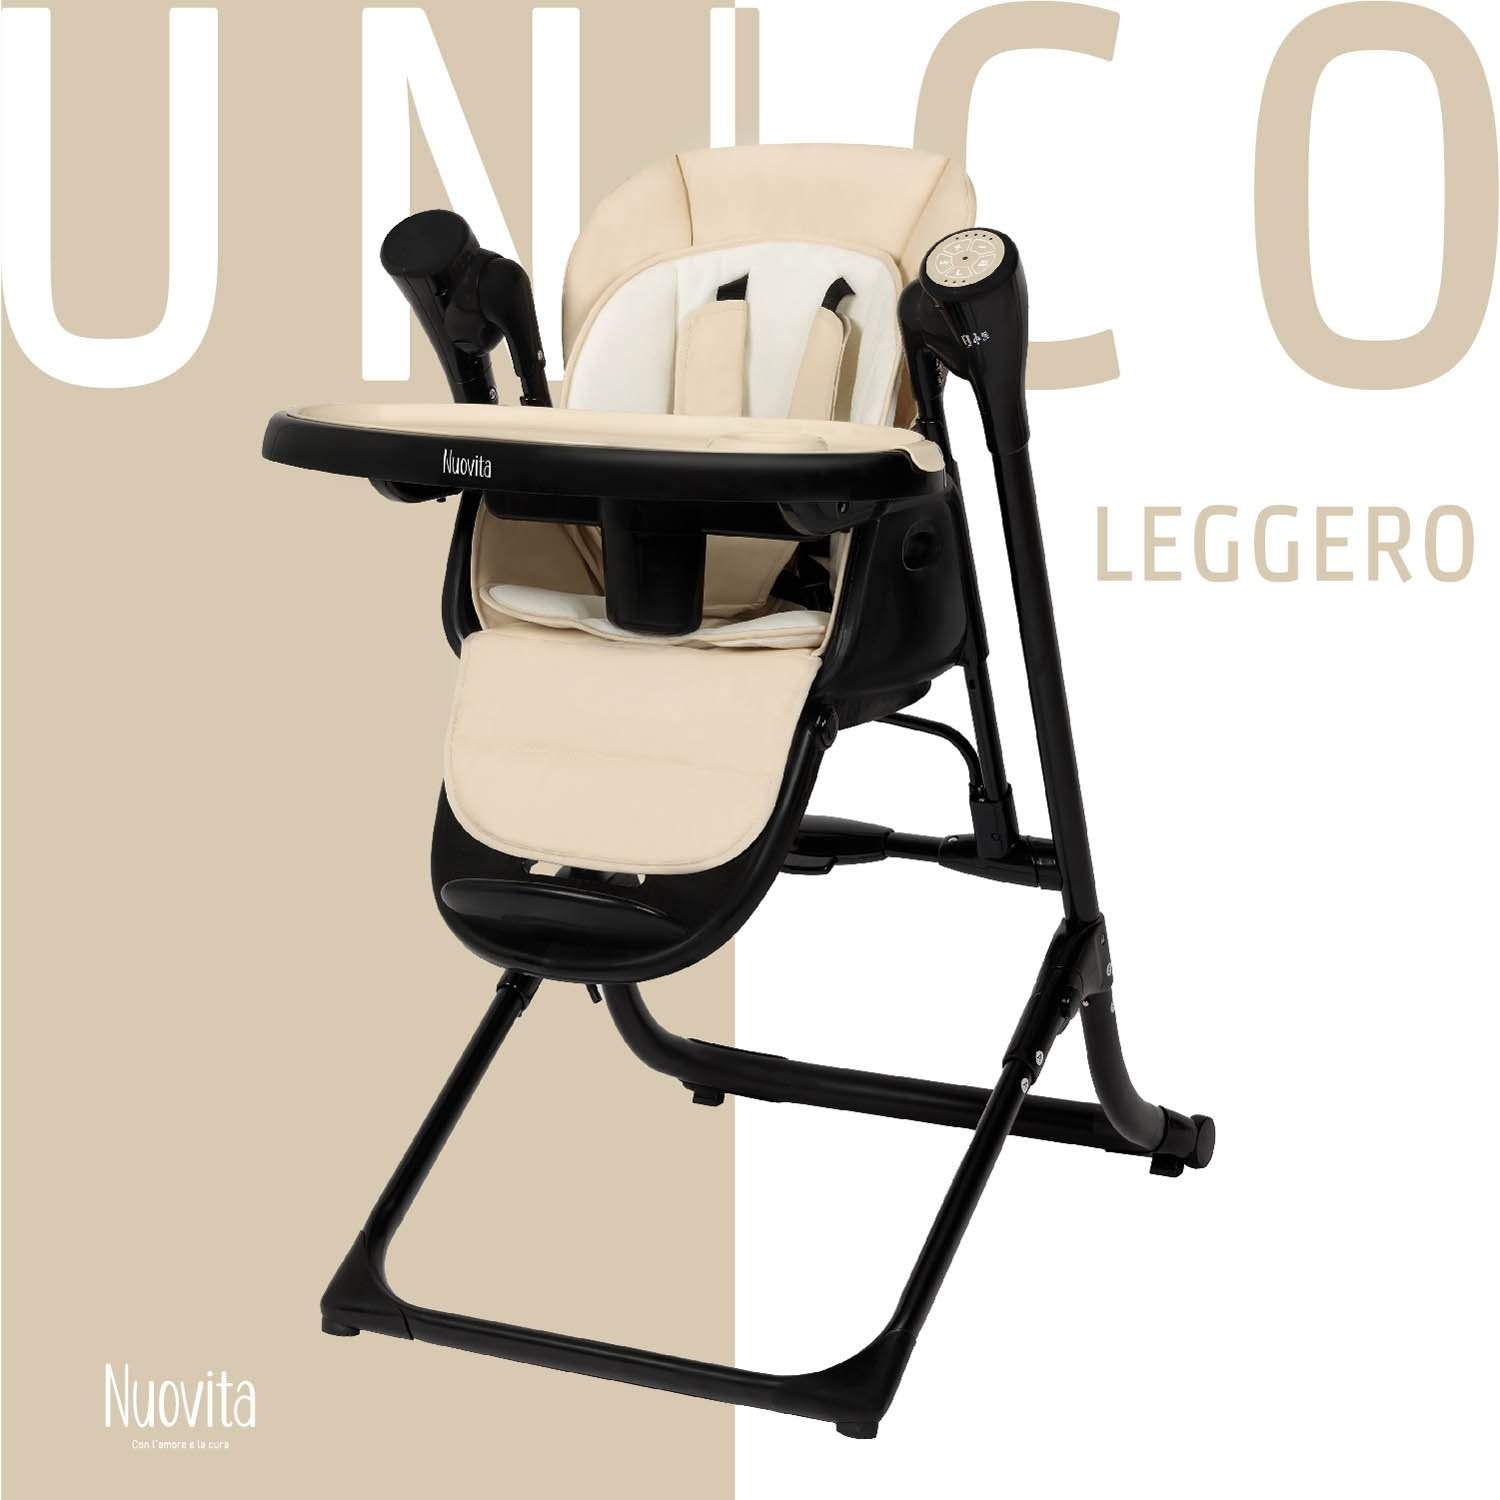 Стульчик для кормления с электронной функцией качения Nuovita Unico Leggero Nero латте стульчик для кормления nuovita с электронным устройством качения unico lux